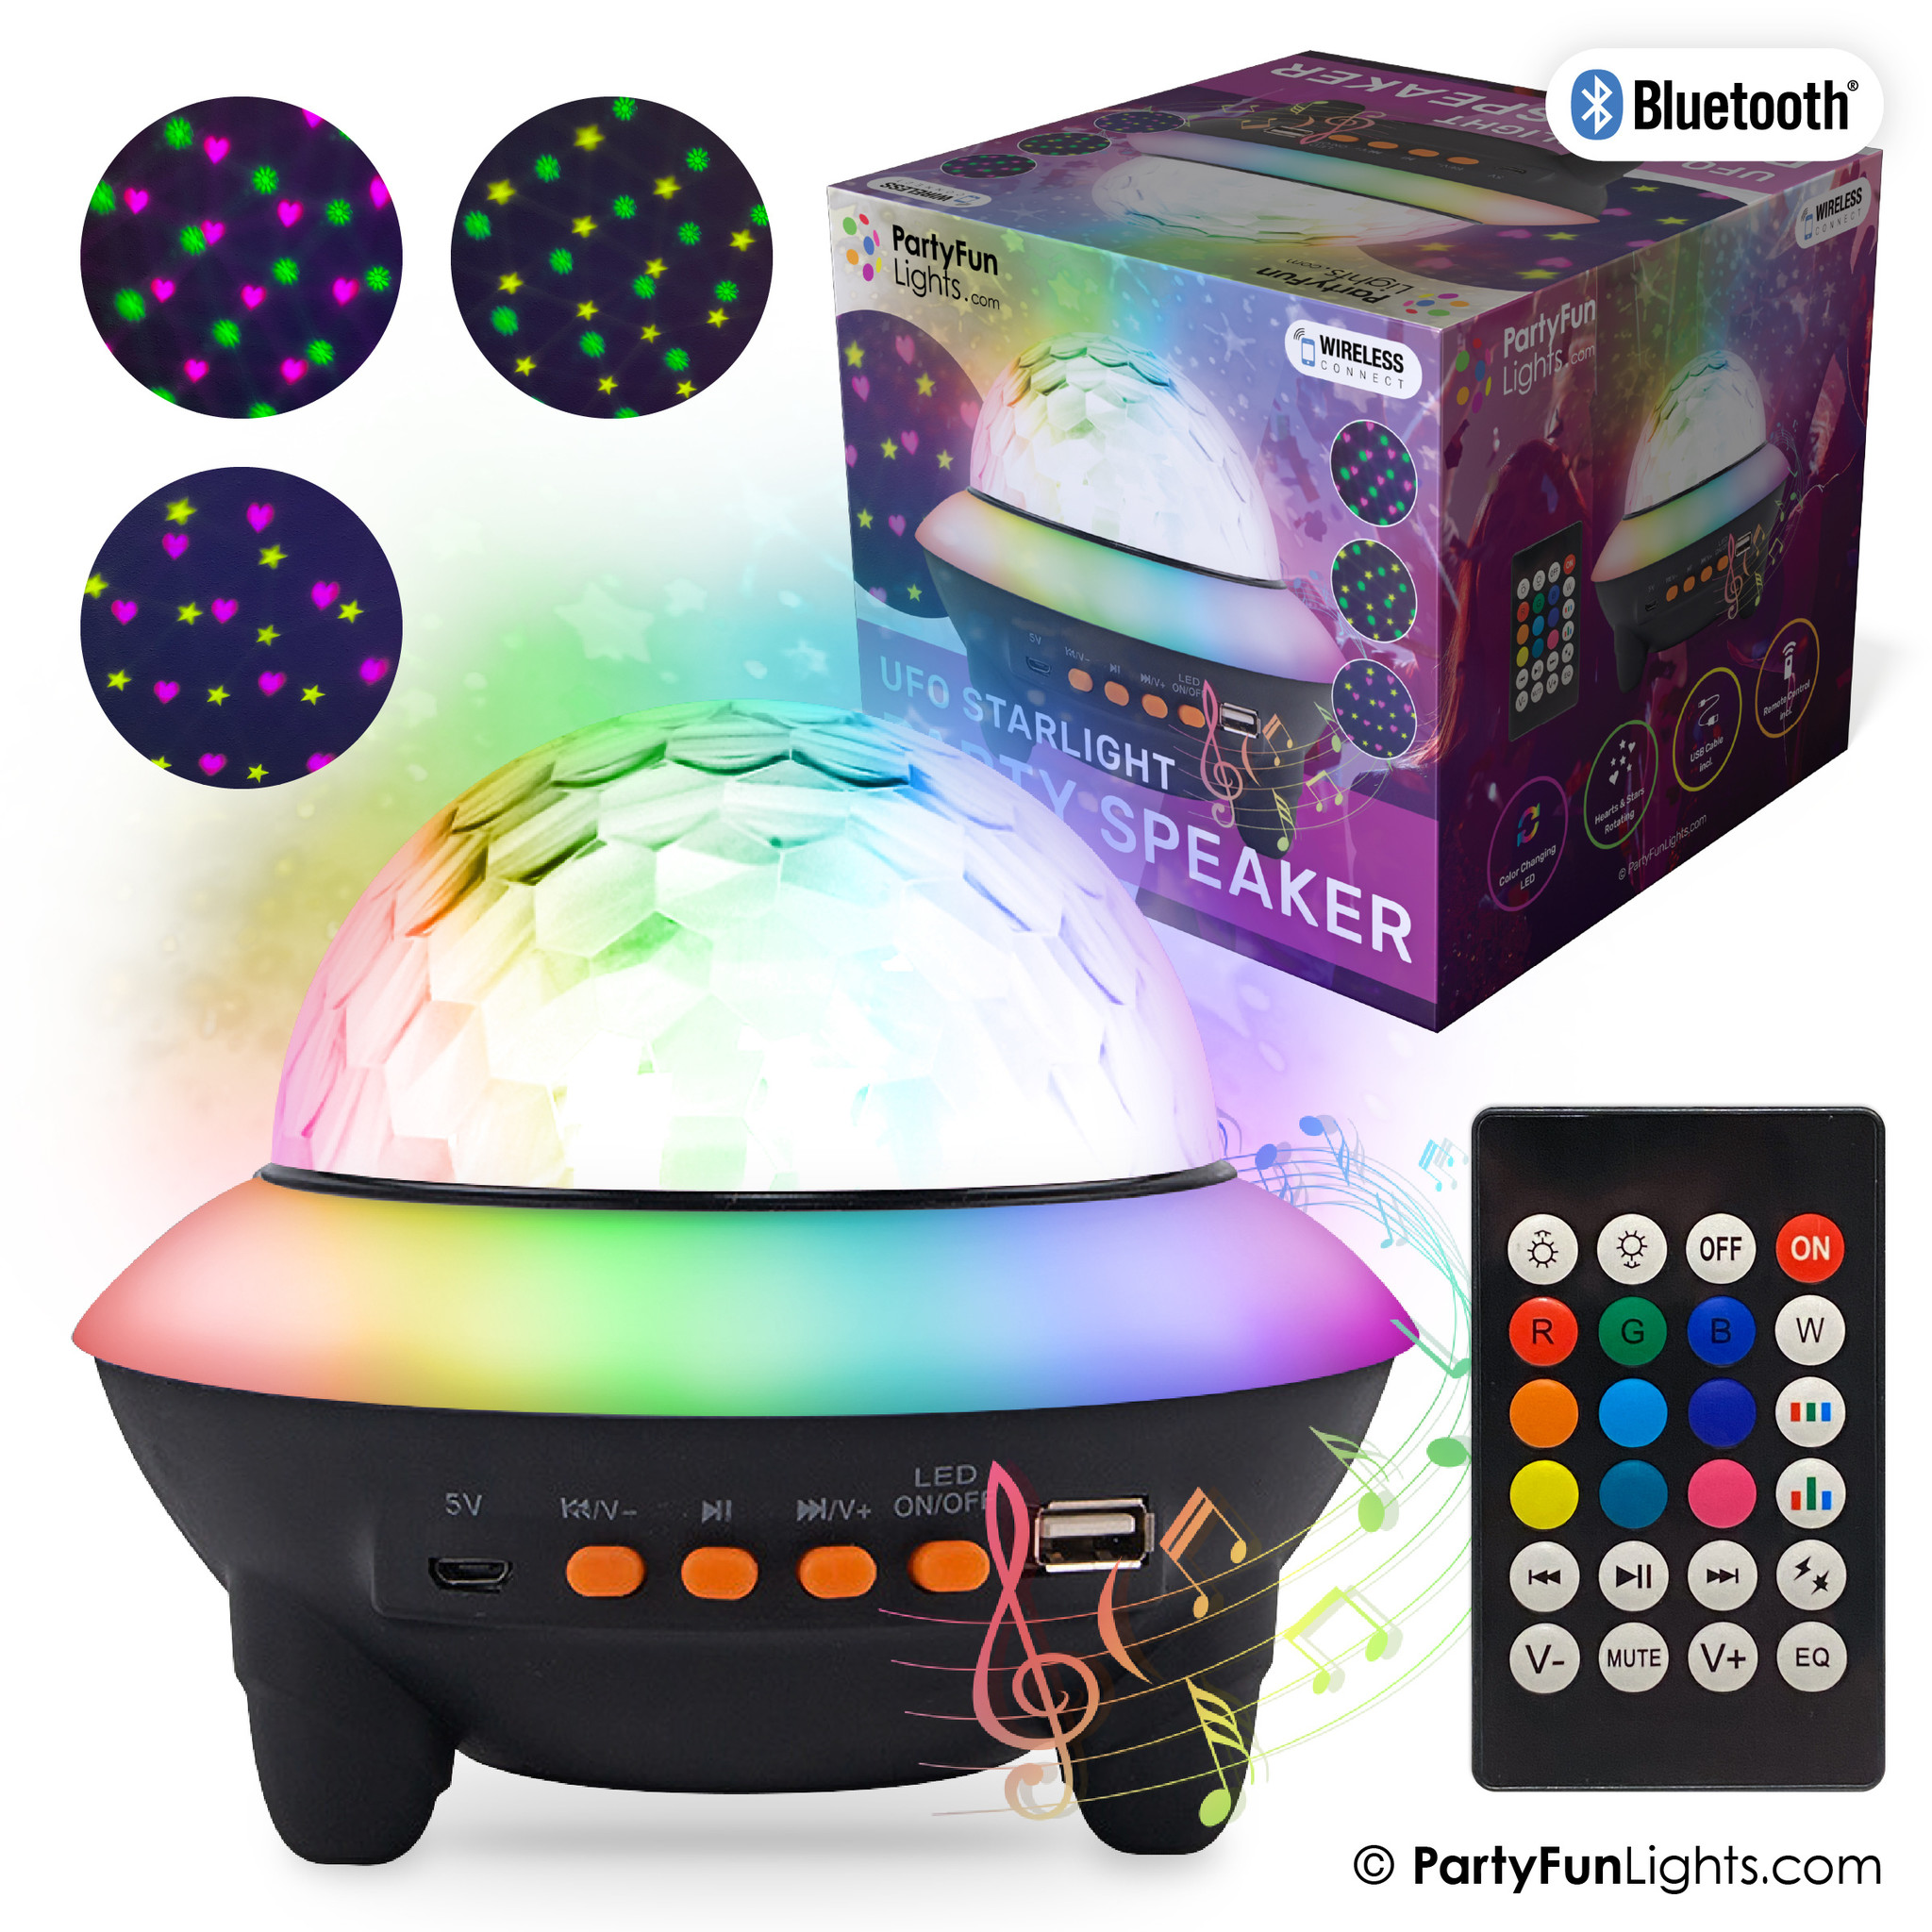 Bluetooth UFO Starlight Party Lautsprecher mit Fernbedienung -  PartyFunLights